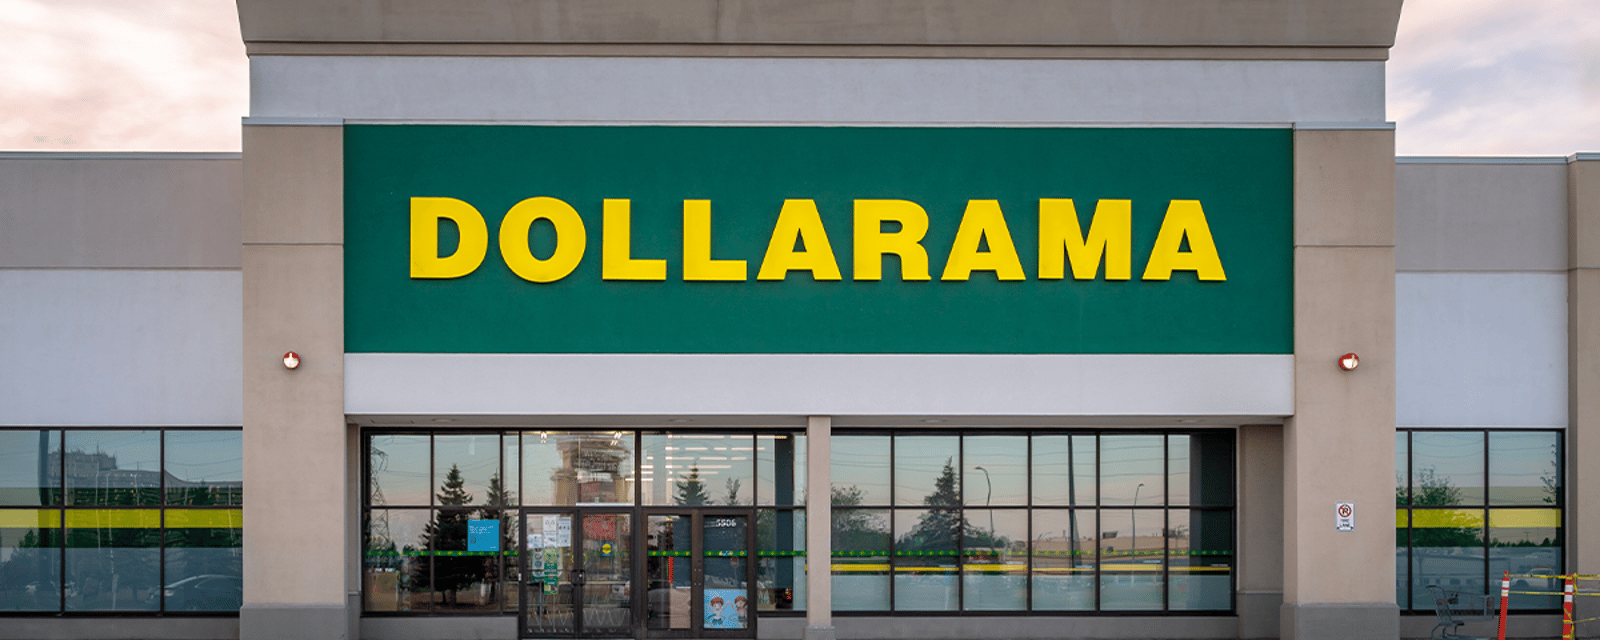 Les bas prix de Dollarama continuent de séduire les Québécois et c'est une bonne nouvelle pour l'entreprise